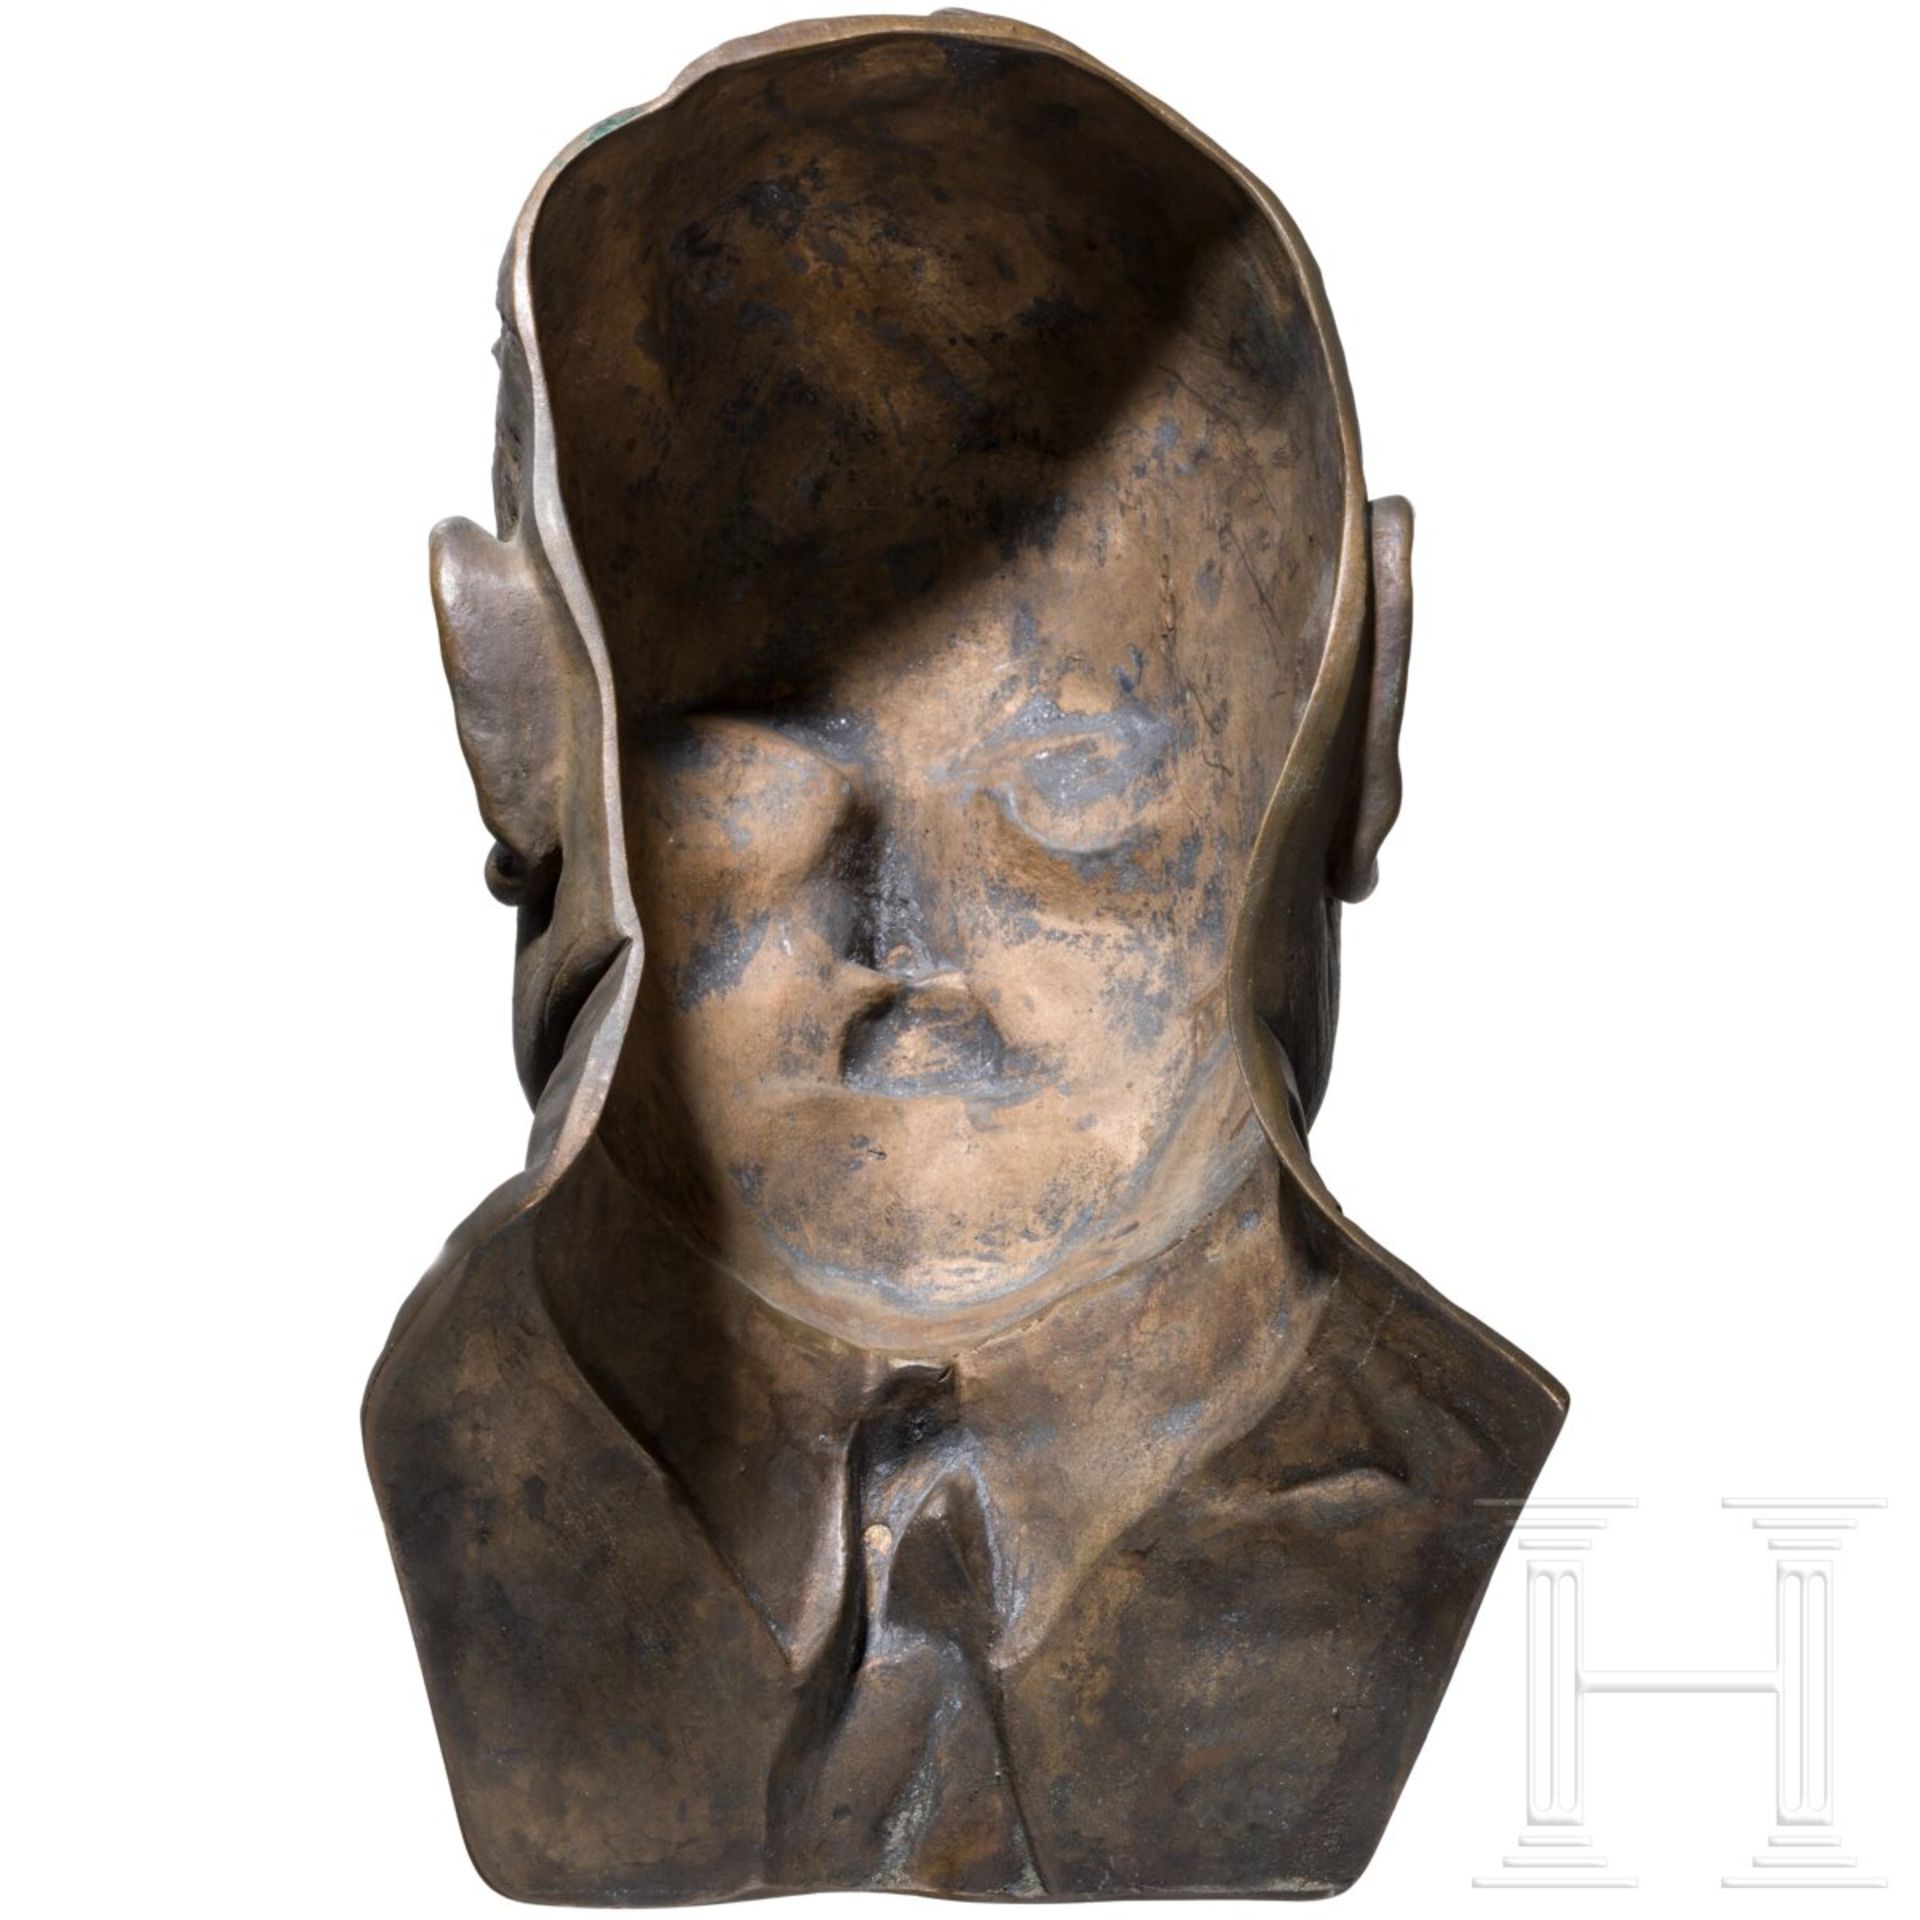 SS-Brigadeführer Julius Schreck - bronzene Totenmaske, 1936 - Image 4 of 5